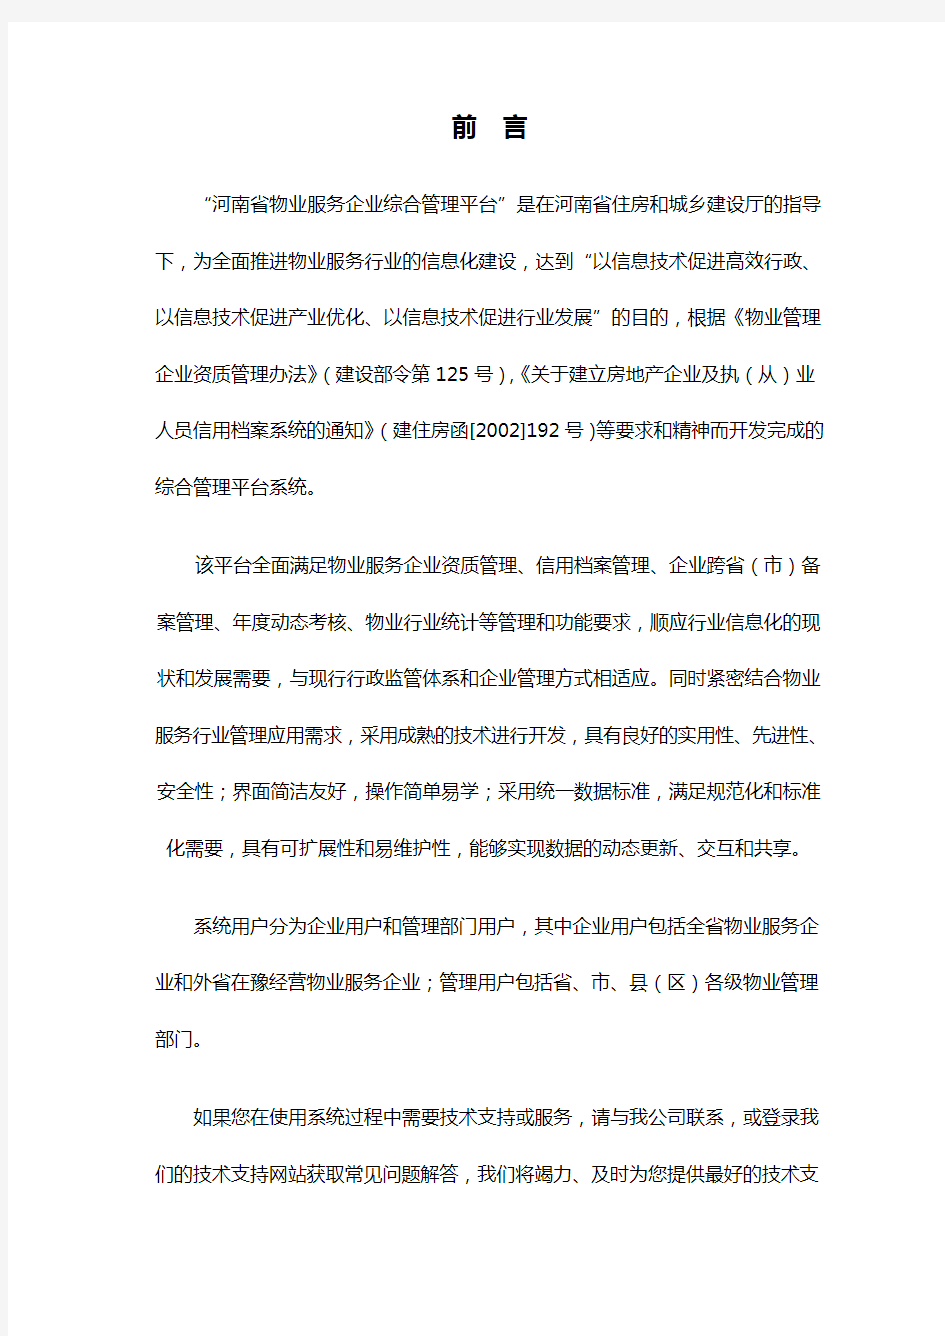 河南省物业服务综合管理平台操作手册